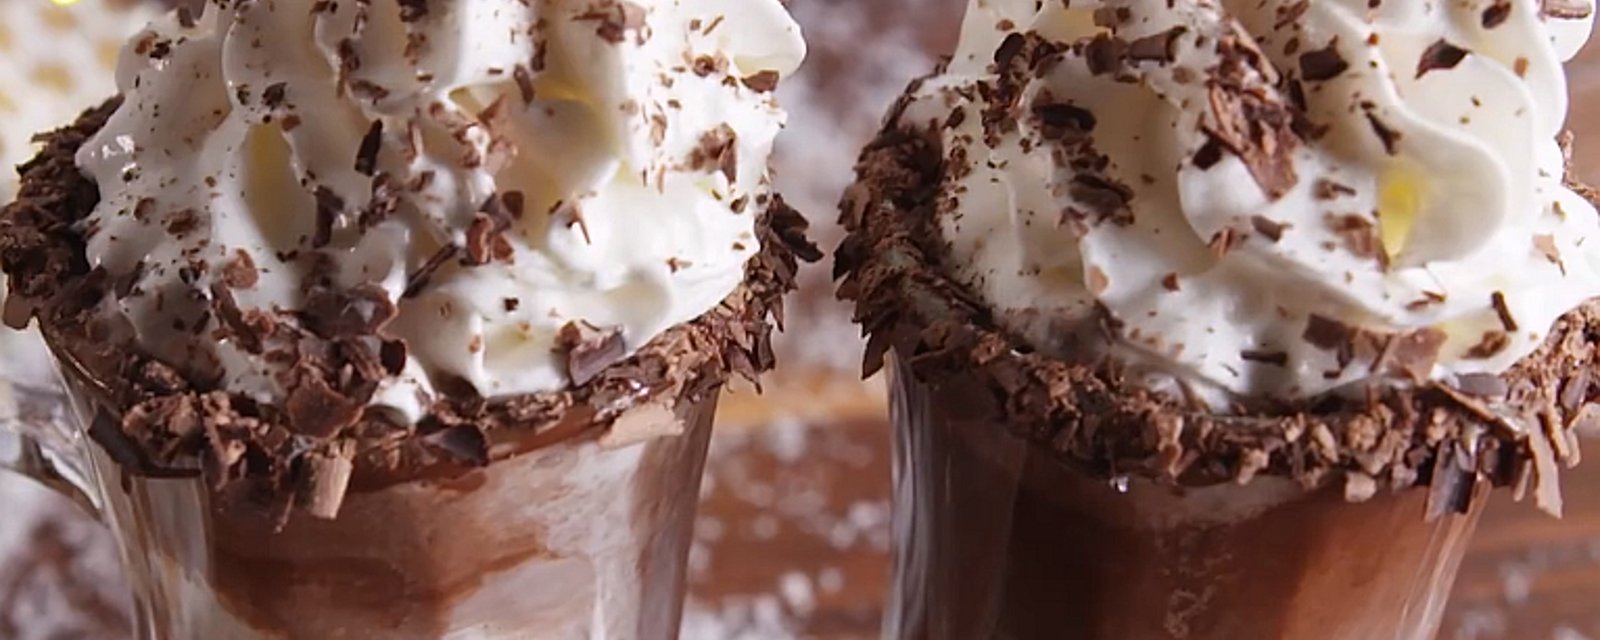 Ce cocktail hivernal combine chocolat chaud, crème glacée et Baileys